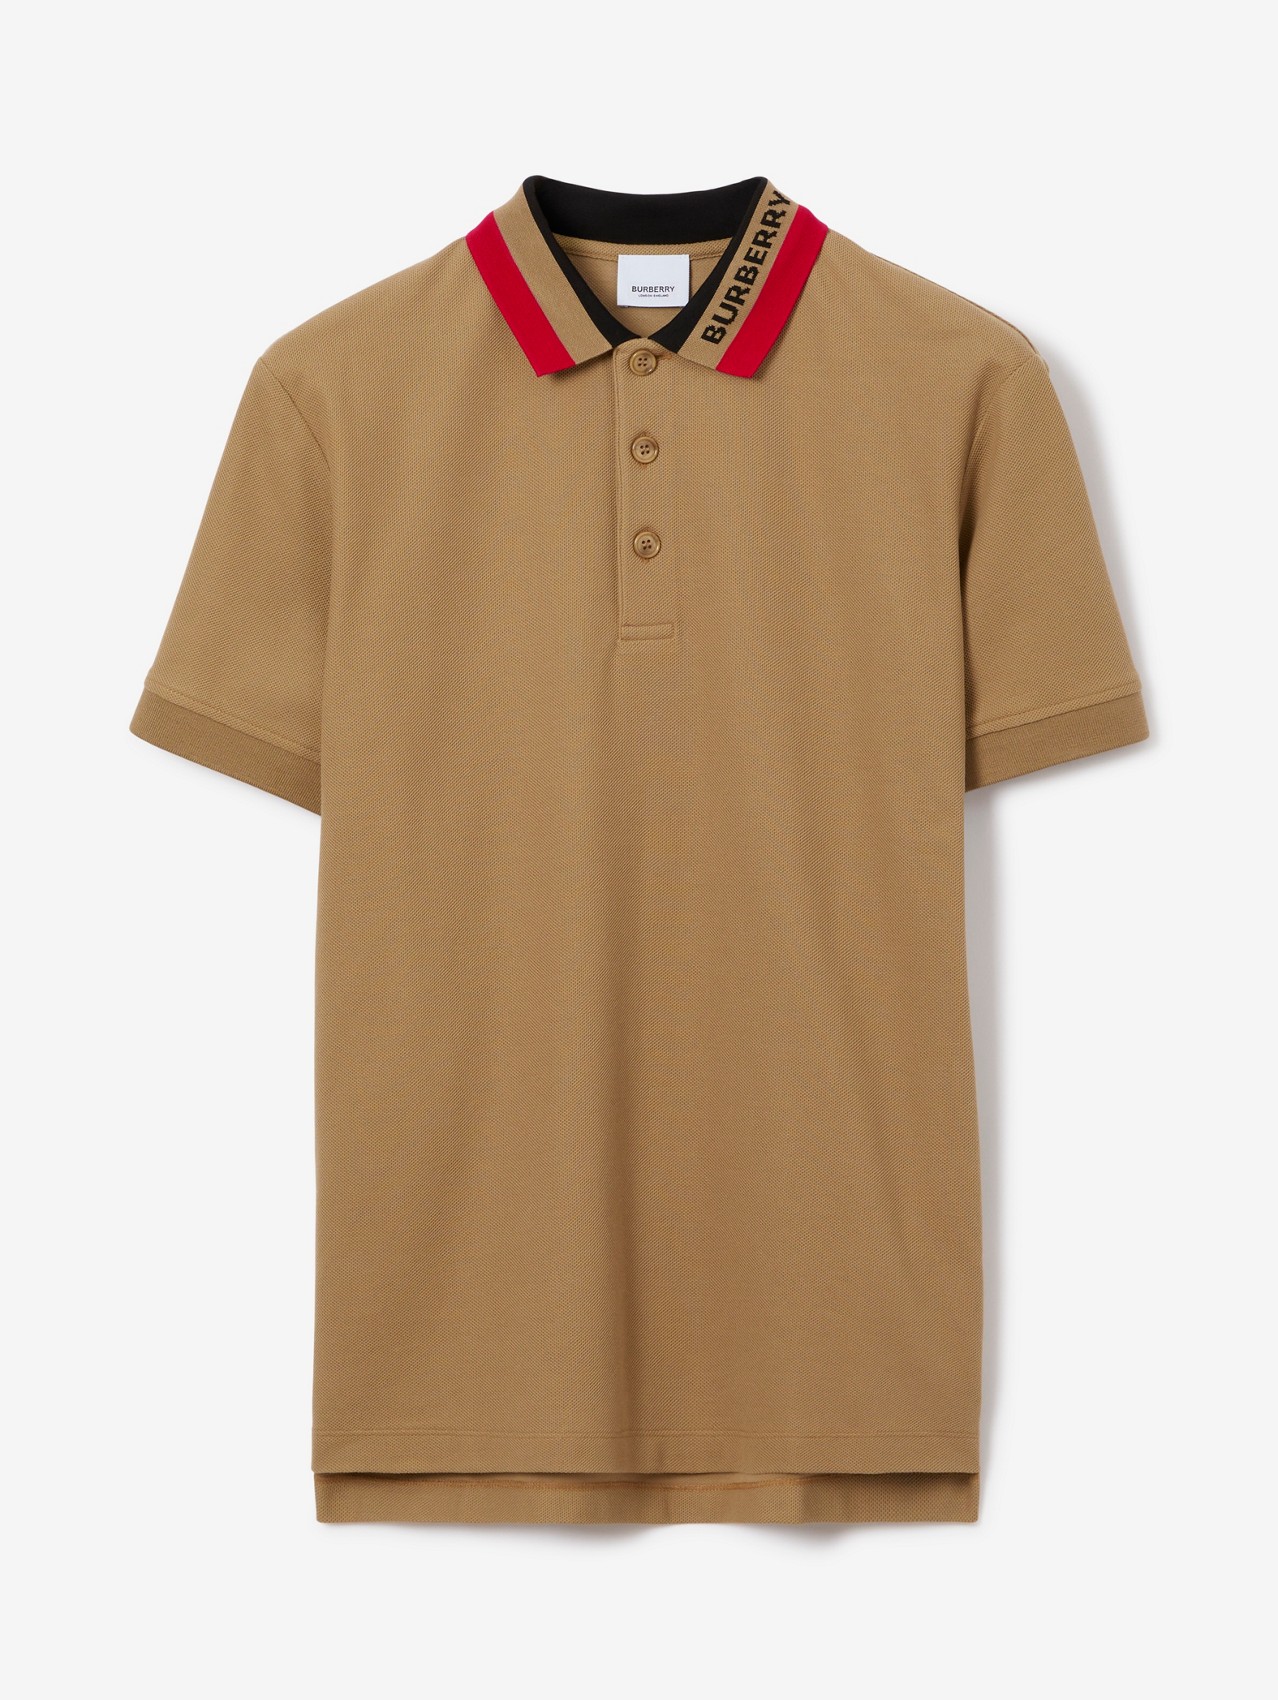 overzee regiment Versterken Men's Designer Polo Shirts & T-shirts | Burberry® Official